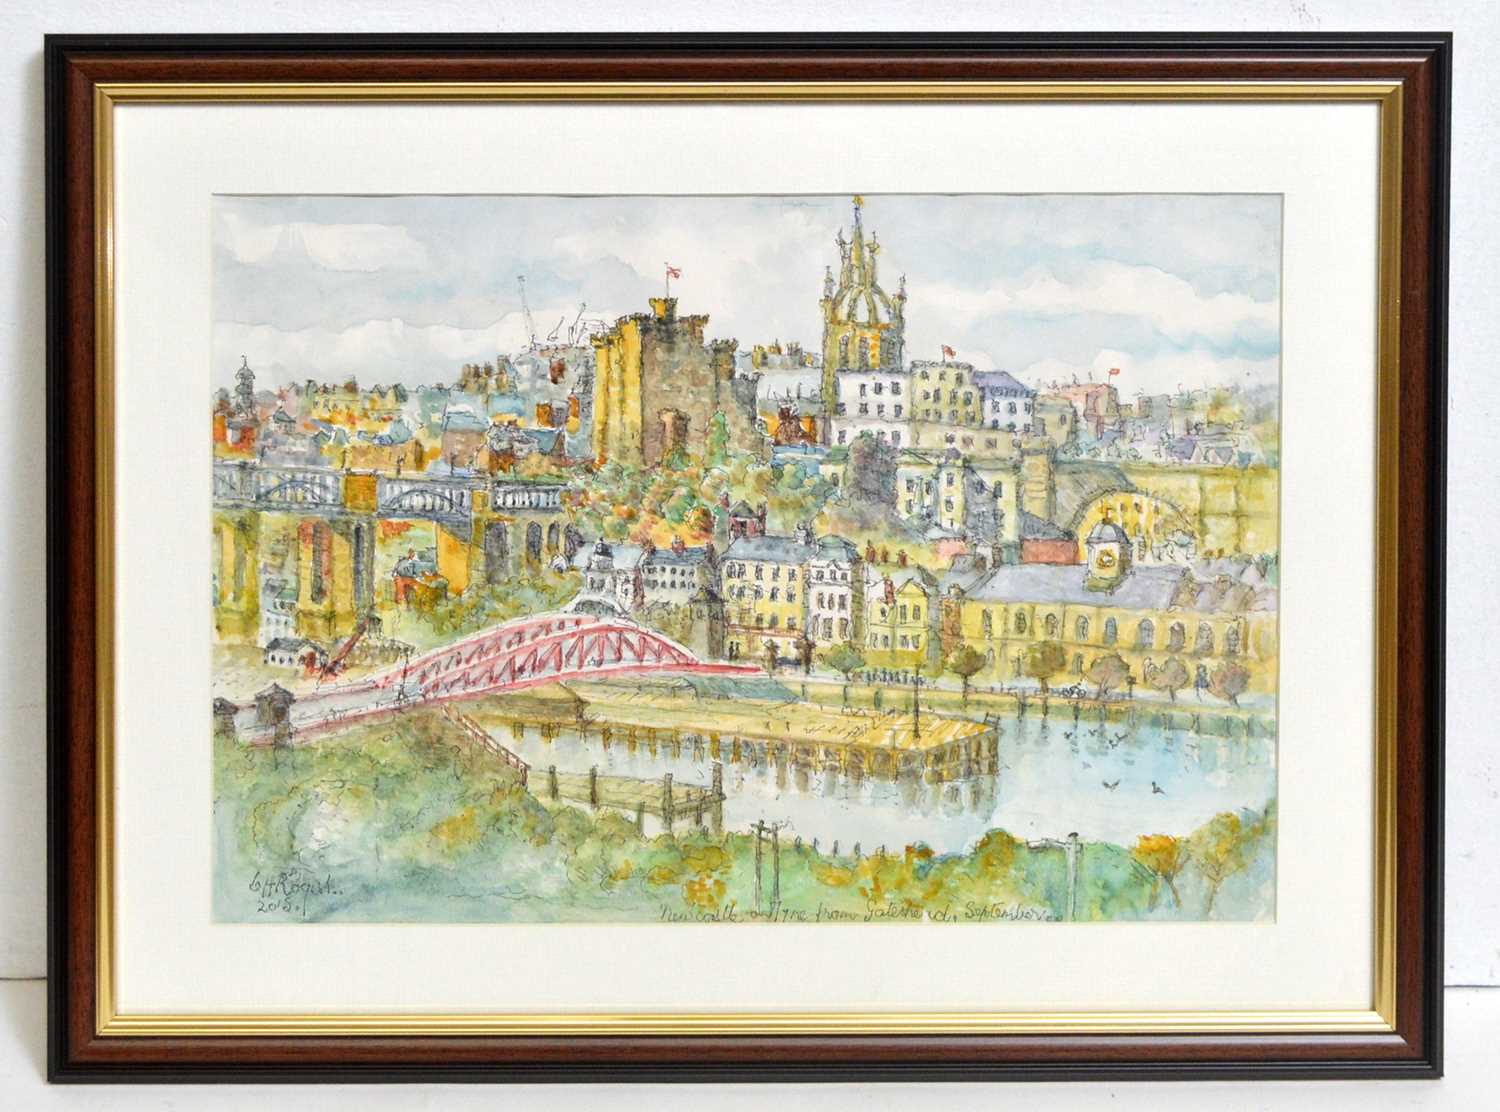 Lot 606 - Charles Herbert "Charlie" Rogers - Newcastle-on-Tyne from Gateshead, September | watercolour